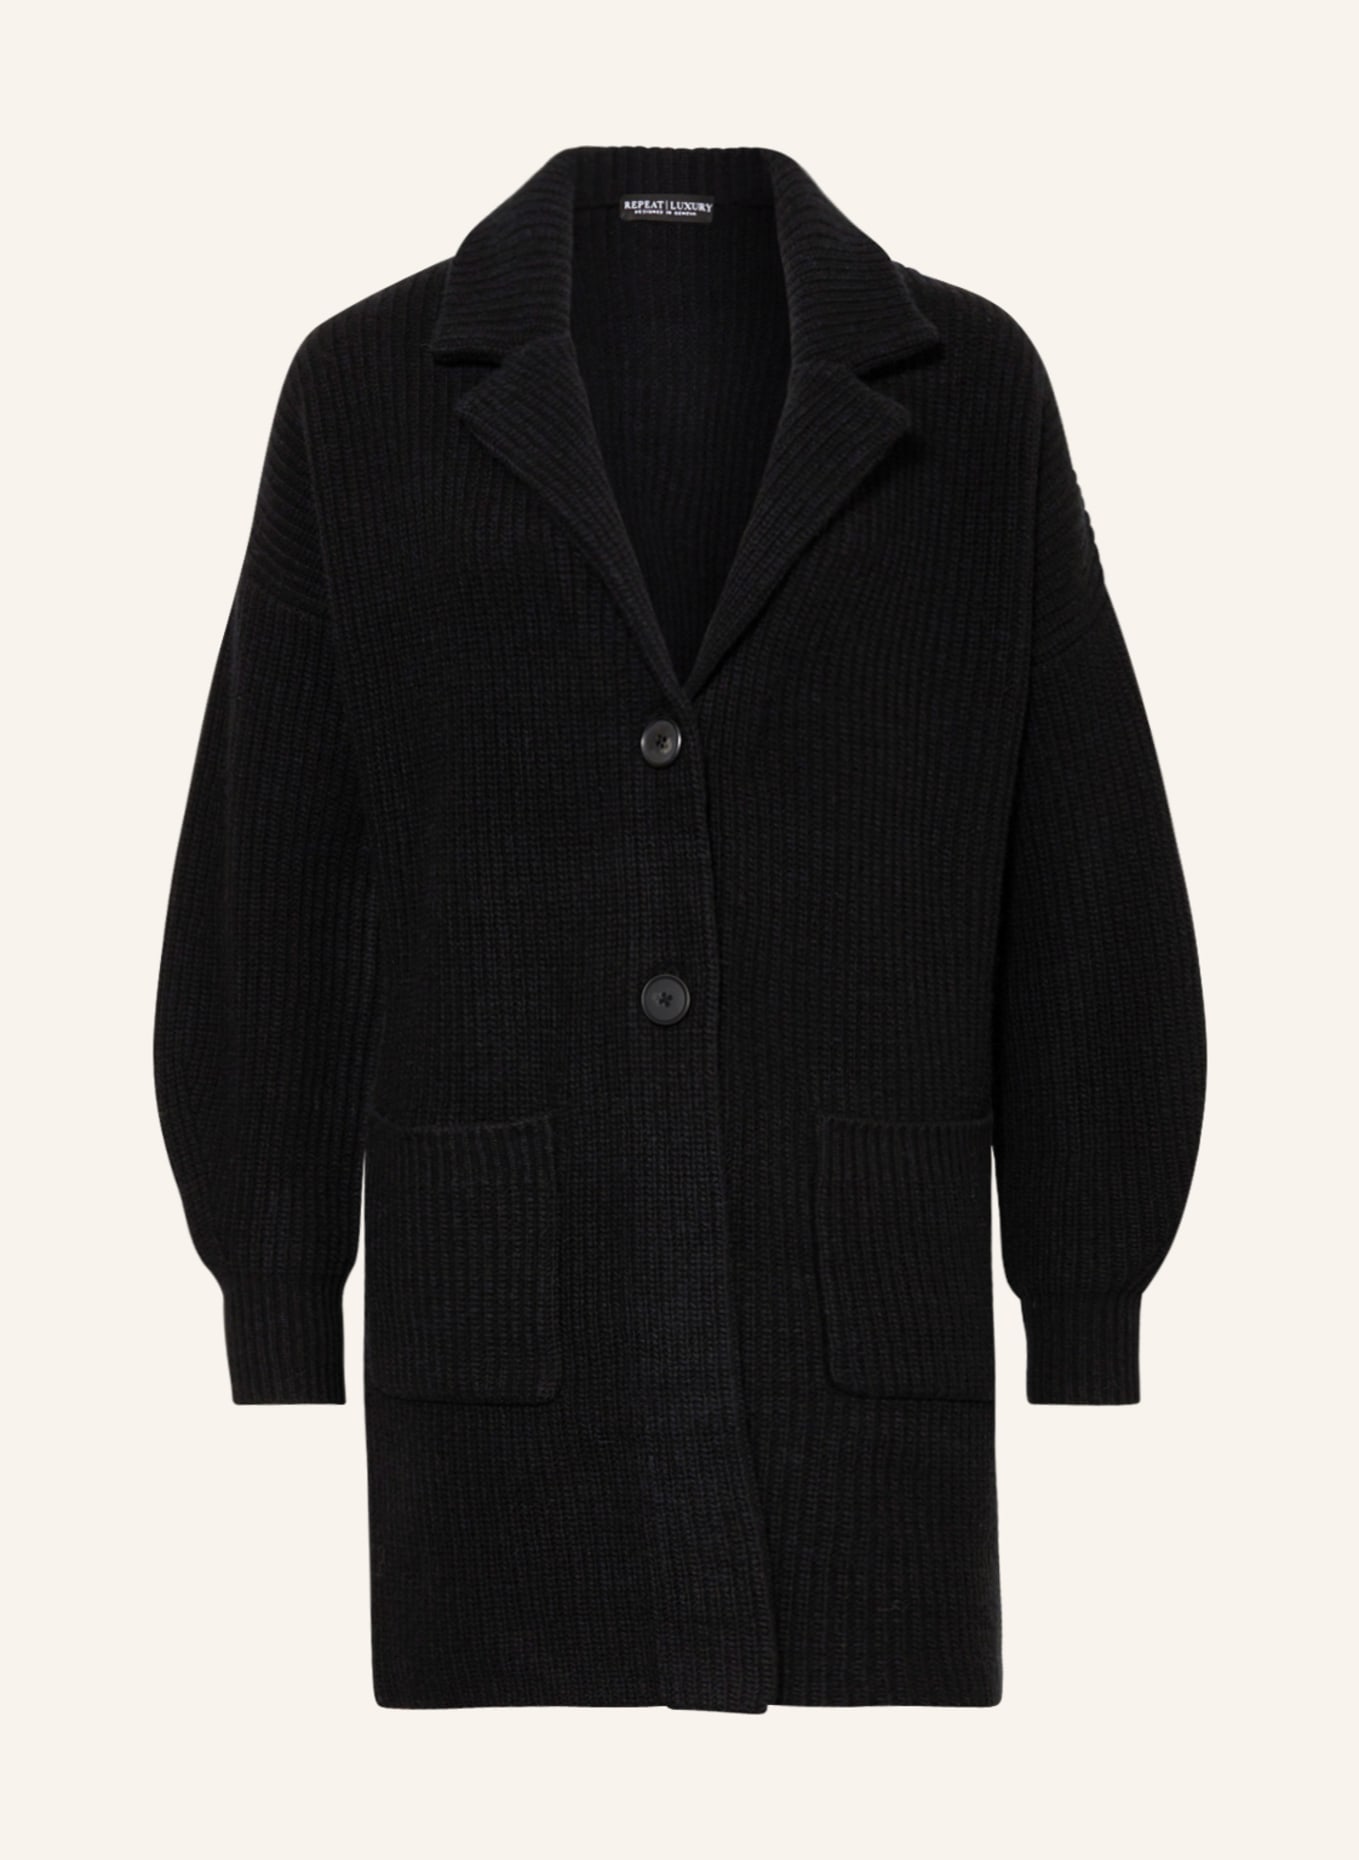 REPEAT Cardigan in merino wool, Color: BLACK (Image 1)